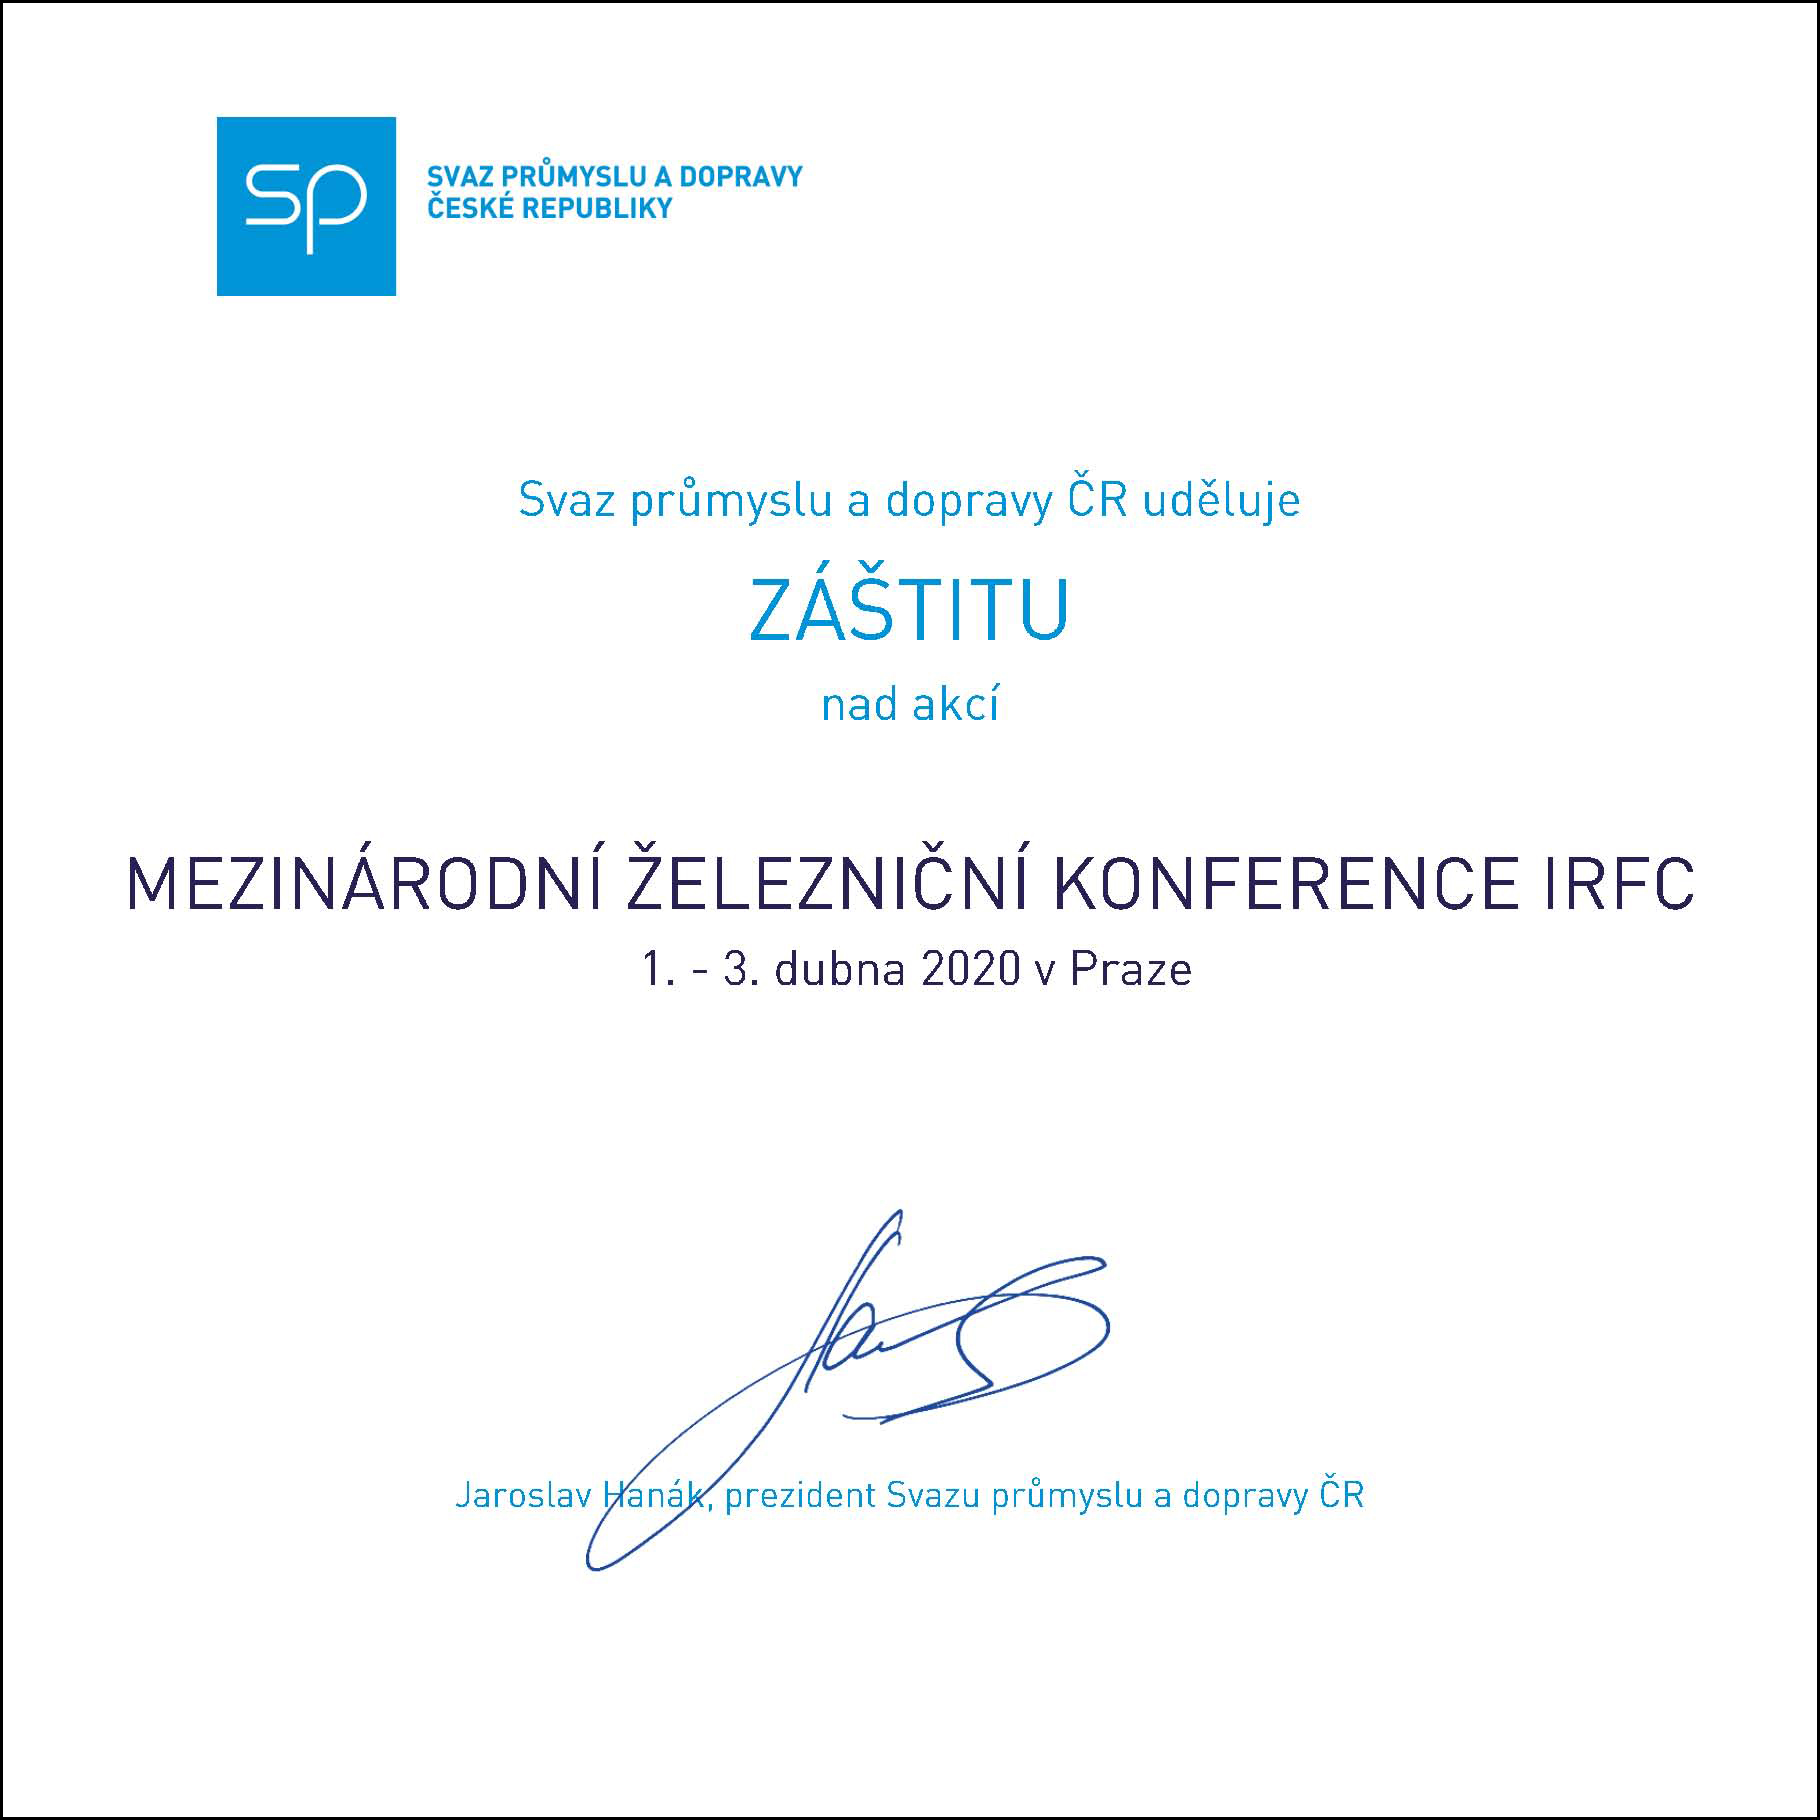 PARTNEREM konference IRFC 2020 se stal Svaz průmyslu a dopravy ČR